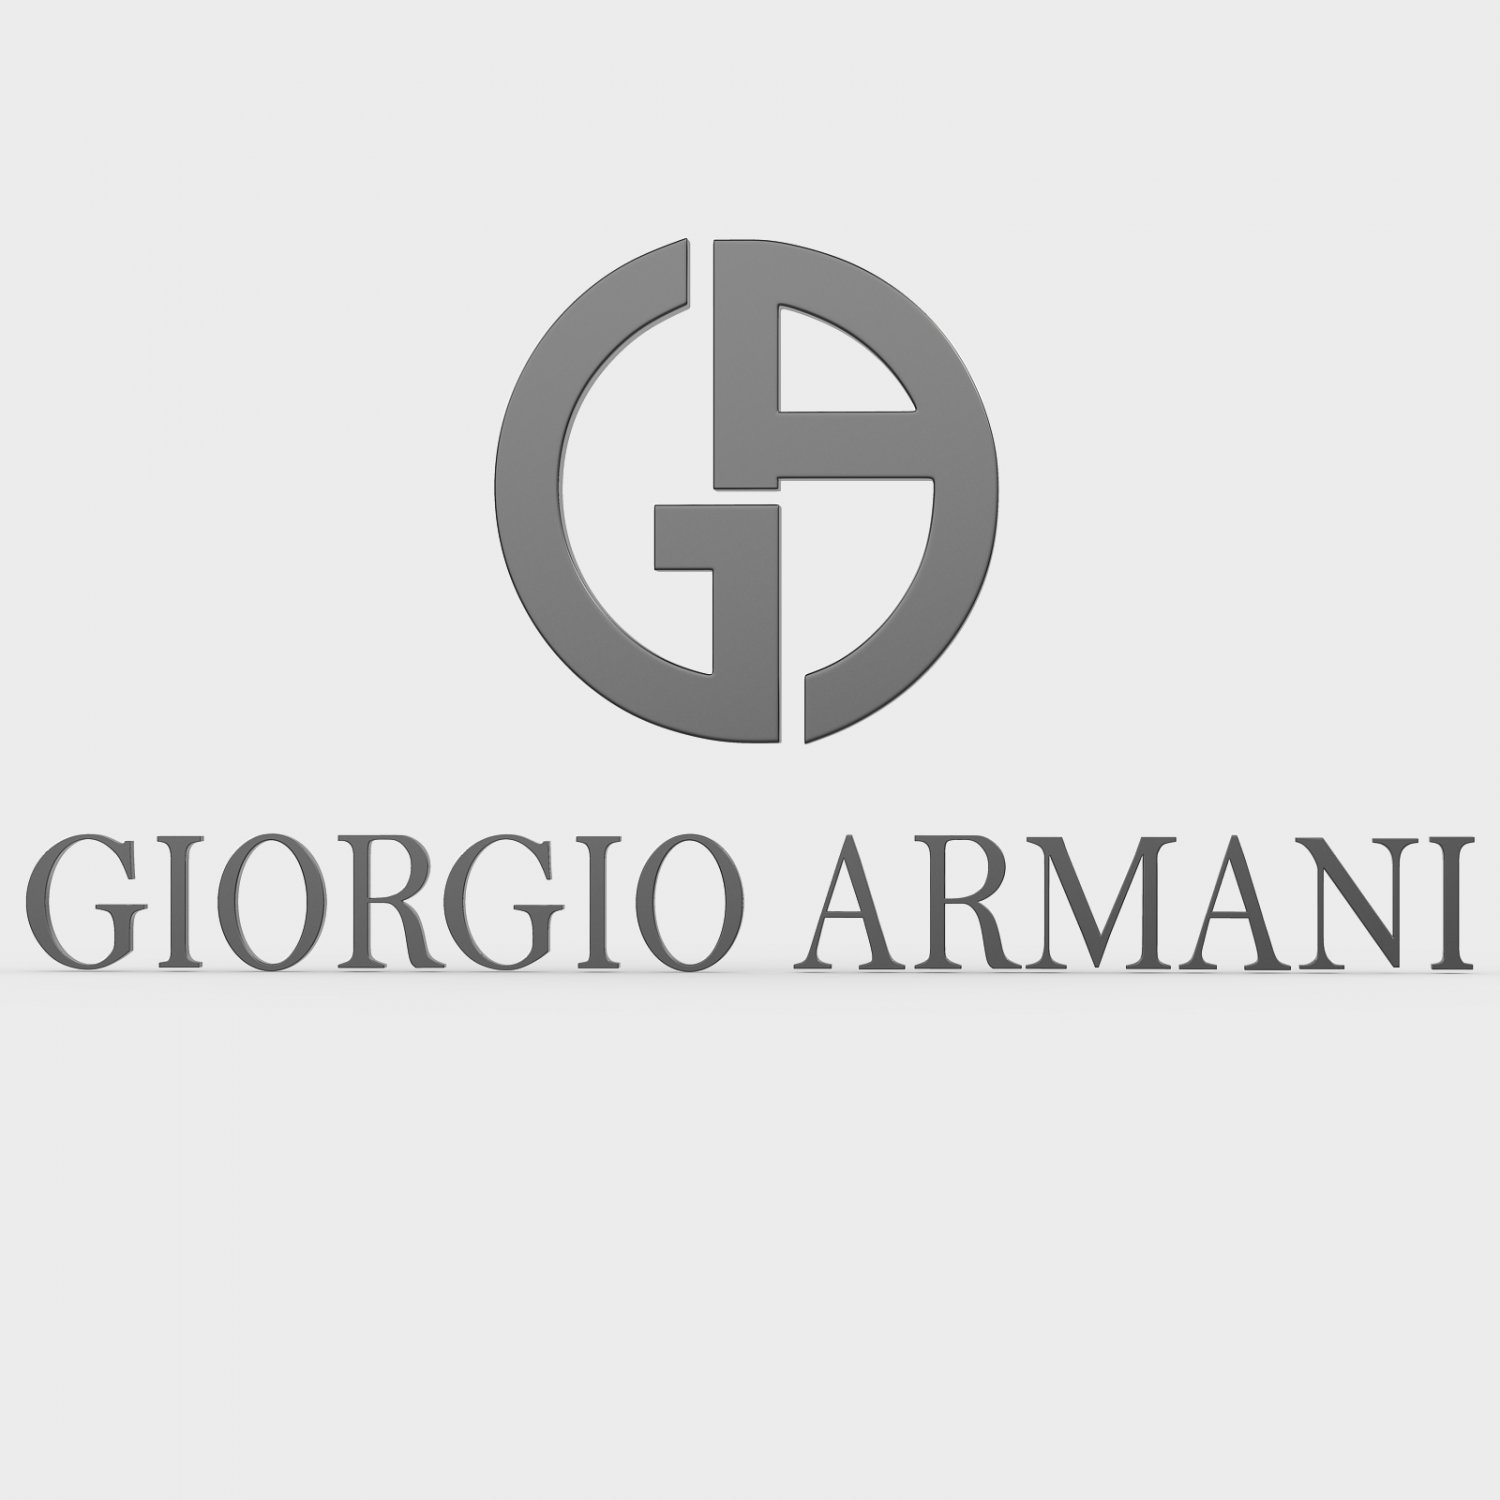 Giorgio armani logo 3D Model in 